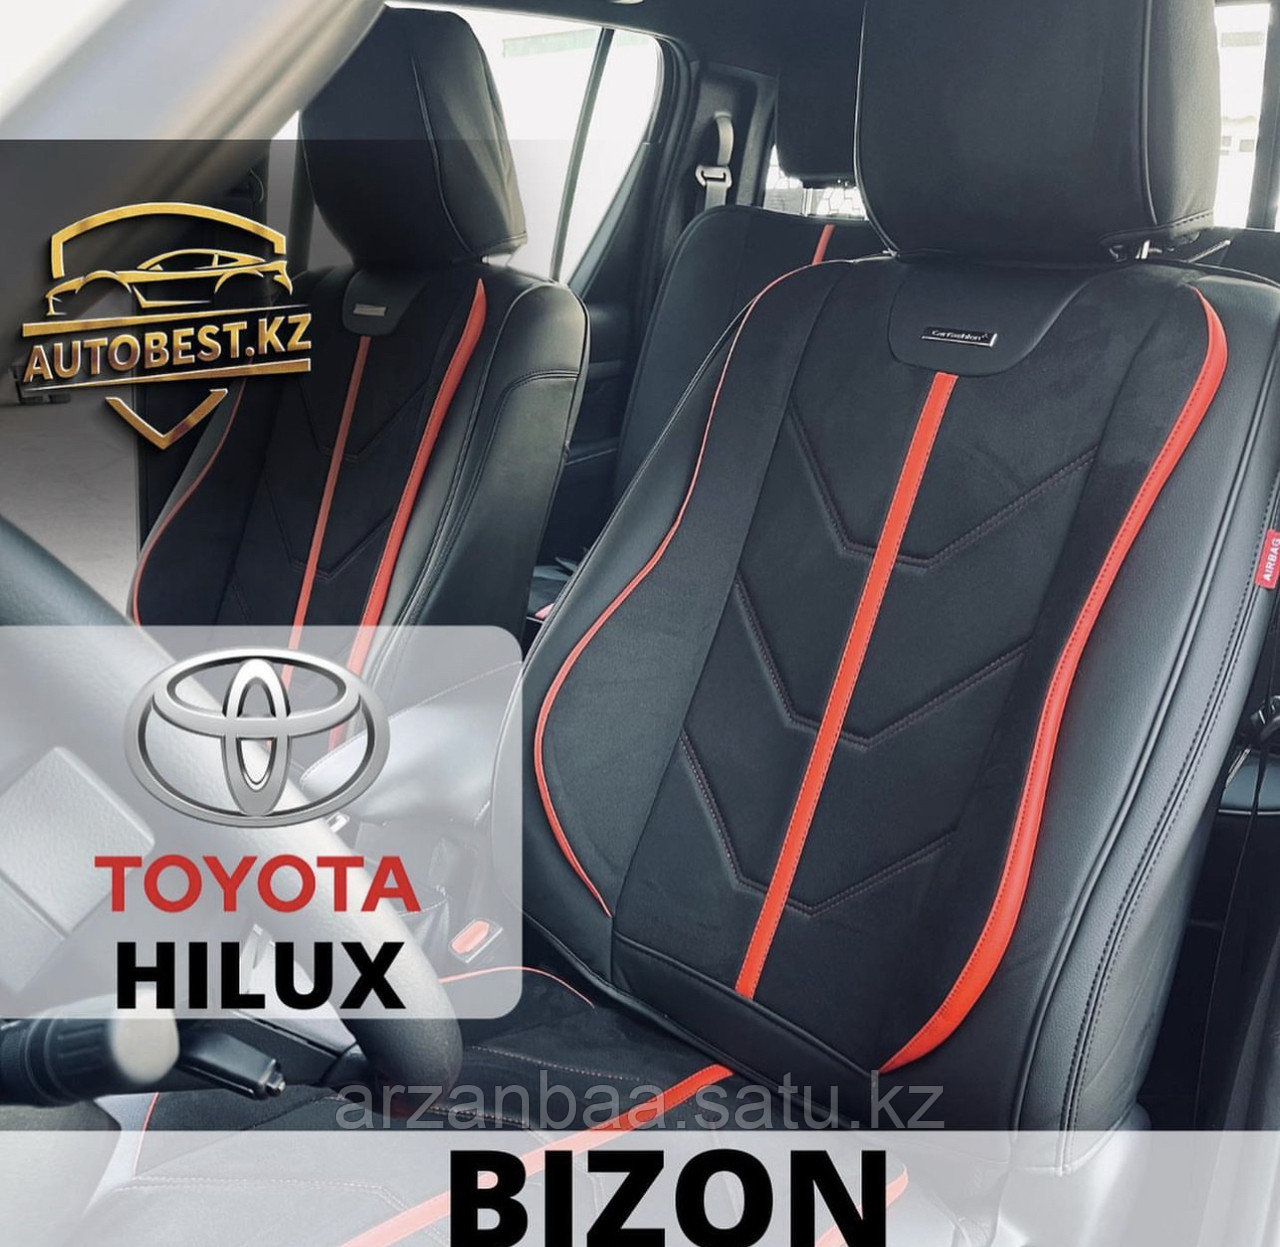 Toyota Hilux авточехлы / авто чехлы / чехлы для Хайлюкс